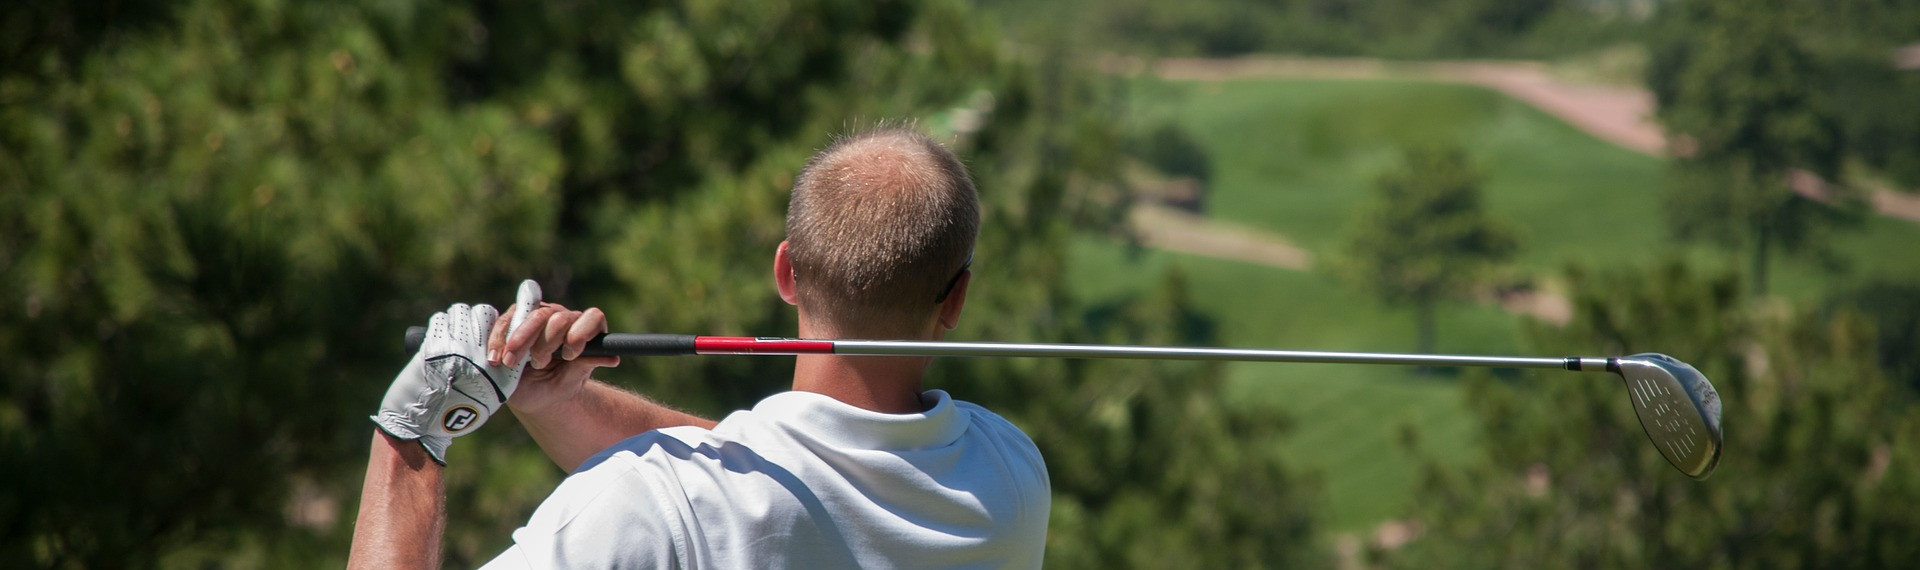 9-Loch-Golf | Golf spielen auf Mallorca | Pissup Reisen